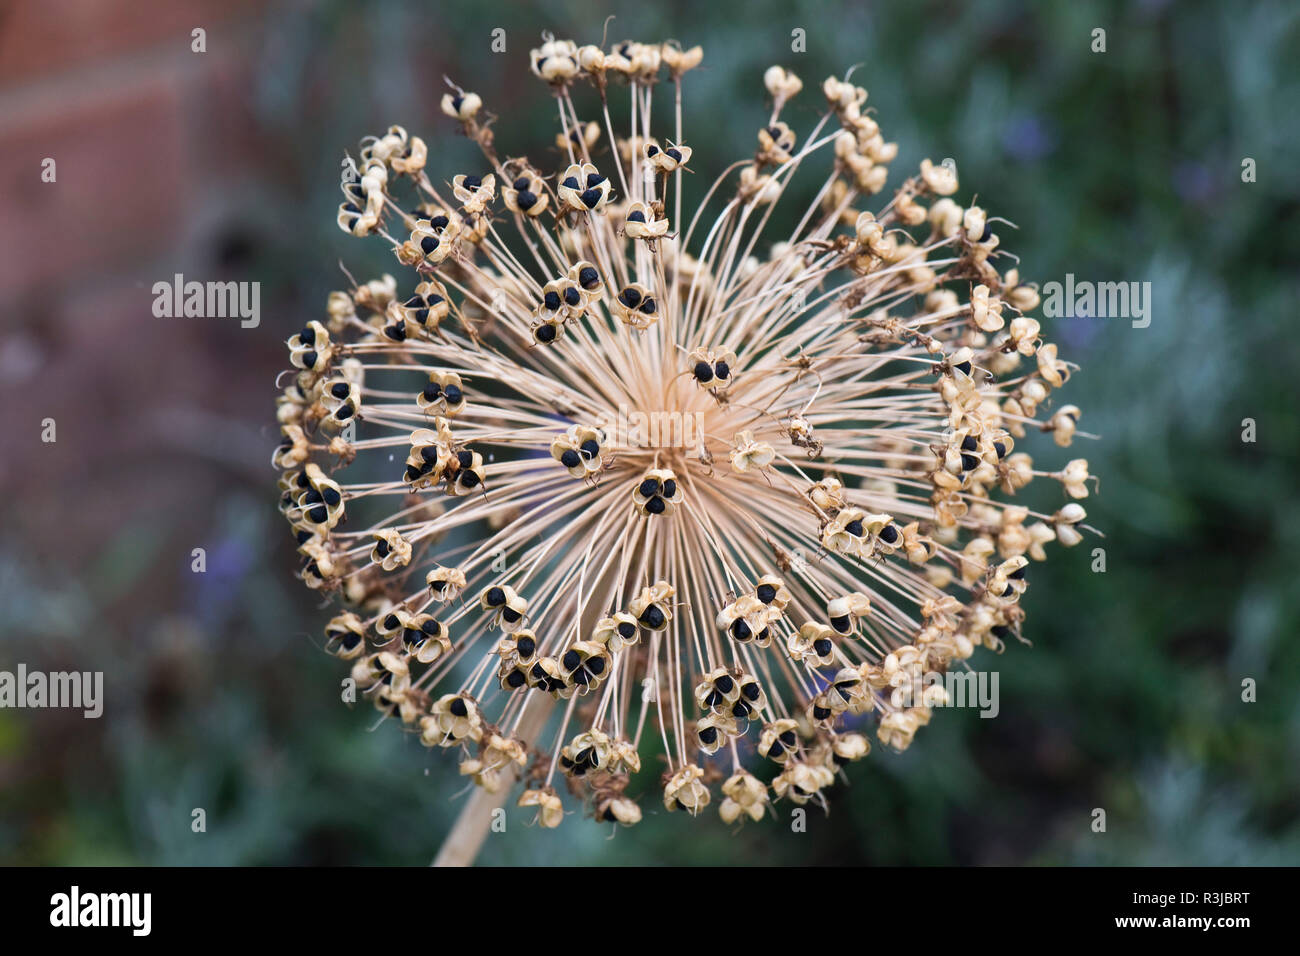 Olandese, aglio Allium hollandicum, 'viola sensazione, seedhead sferica con open seedpods mostra semi neri, Luglio Foto Stock